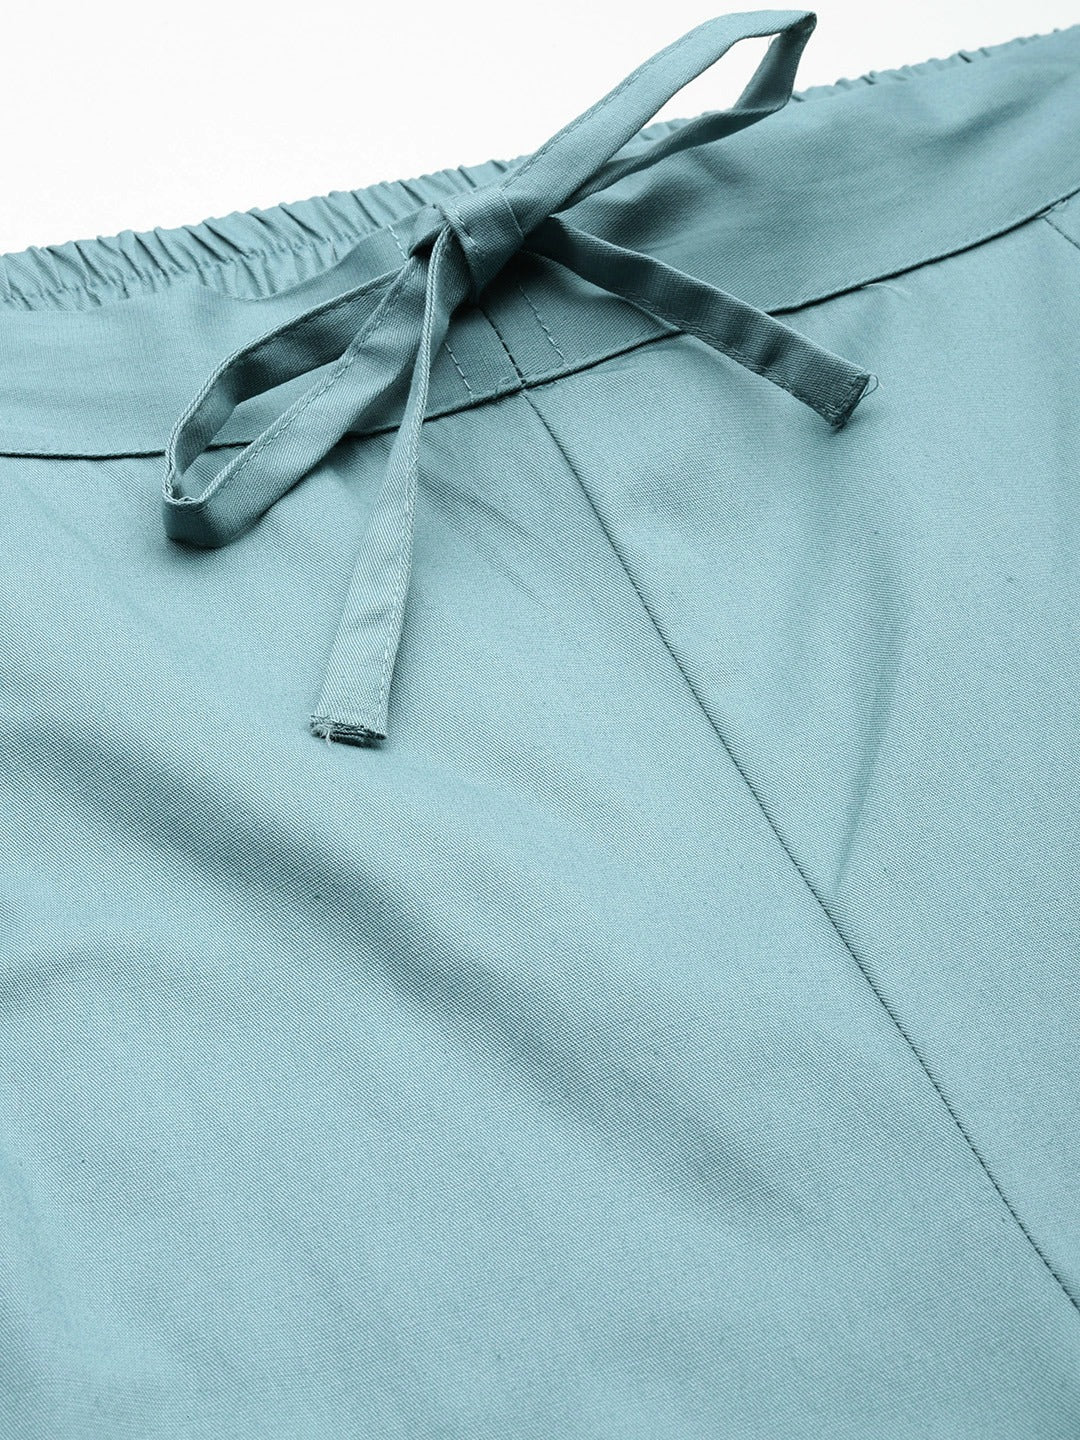 Cotton Lycra Fabric Blue Color Trouser